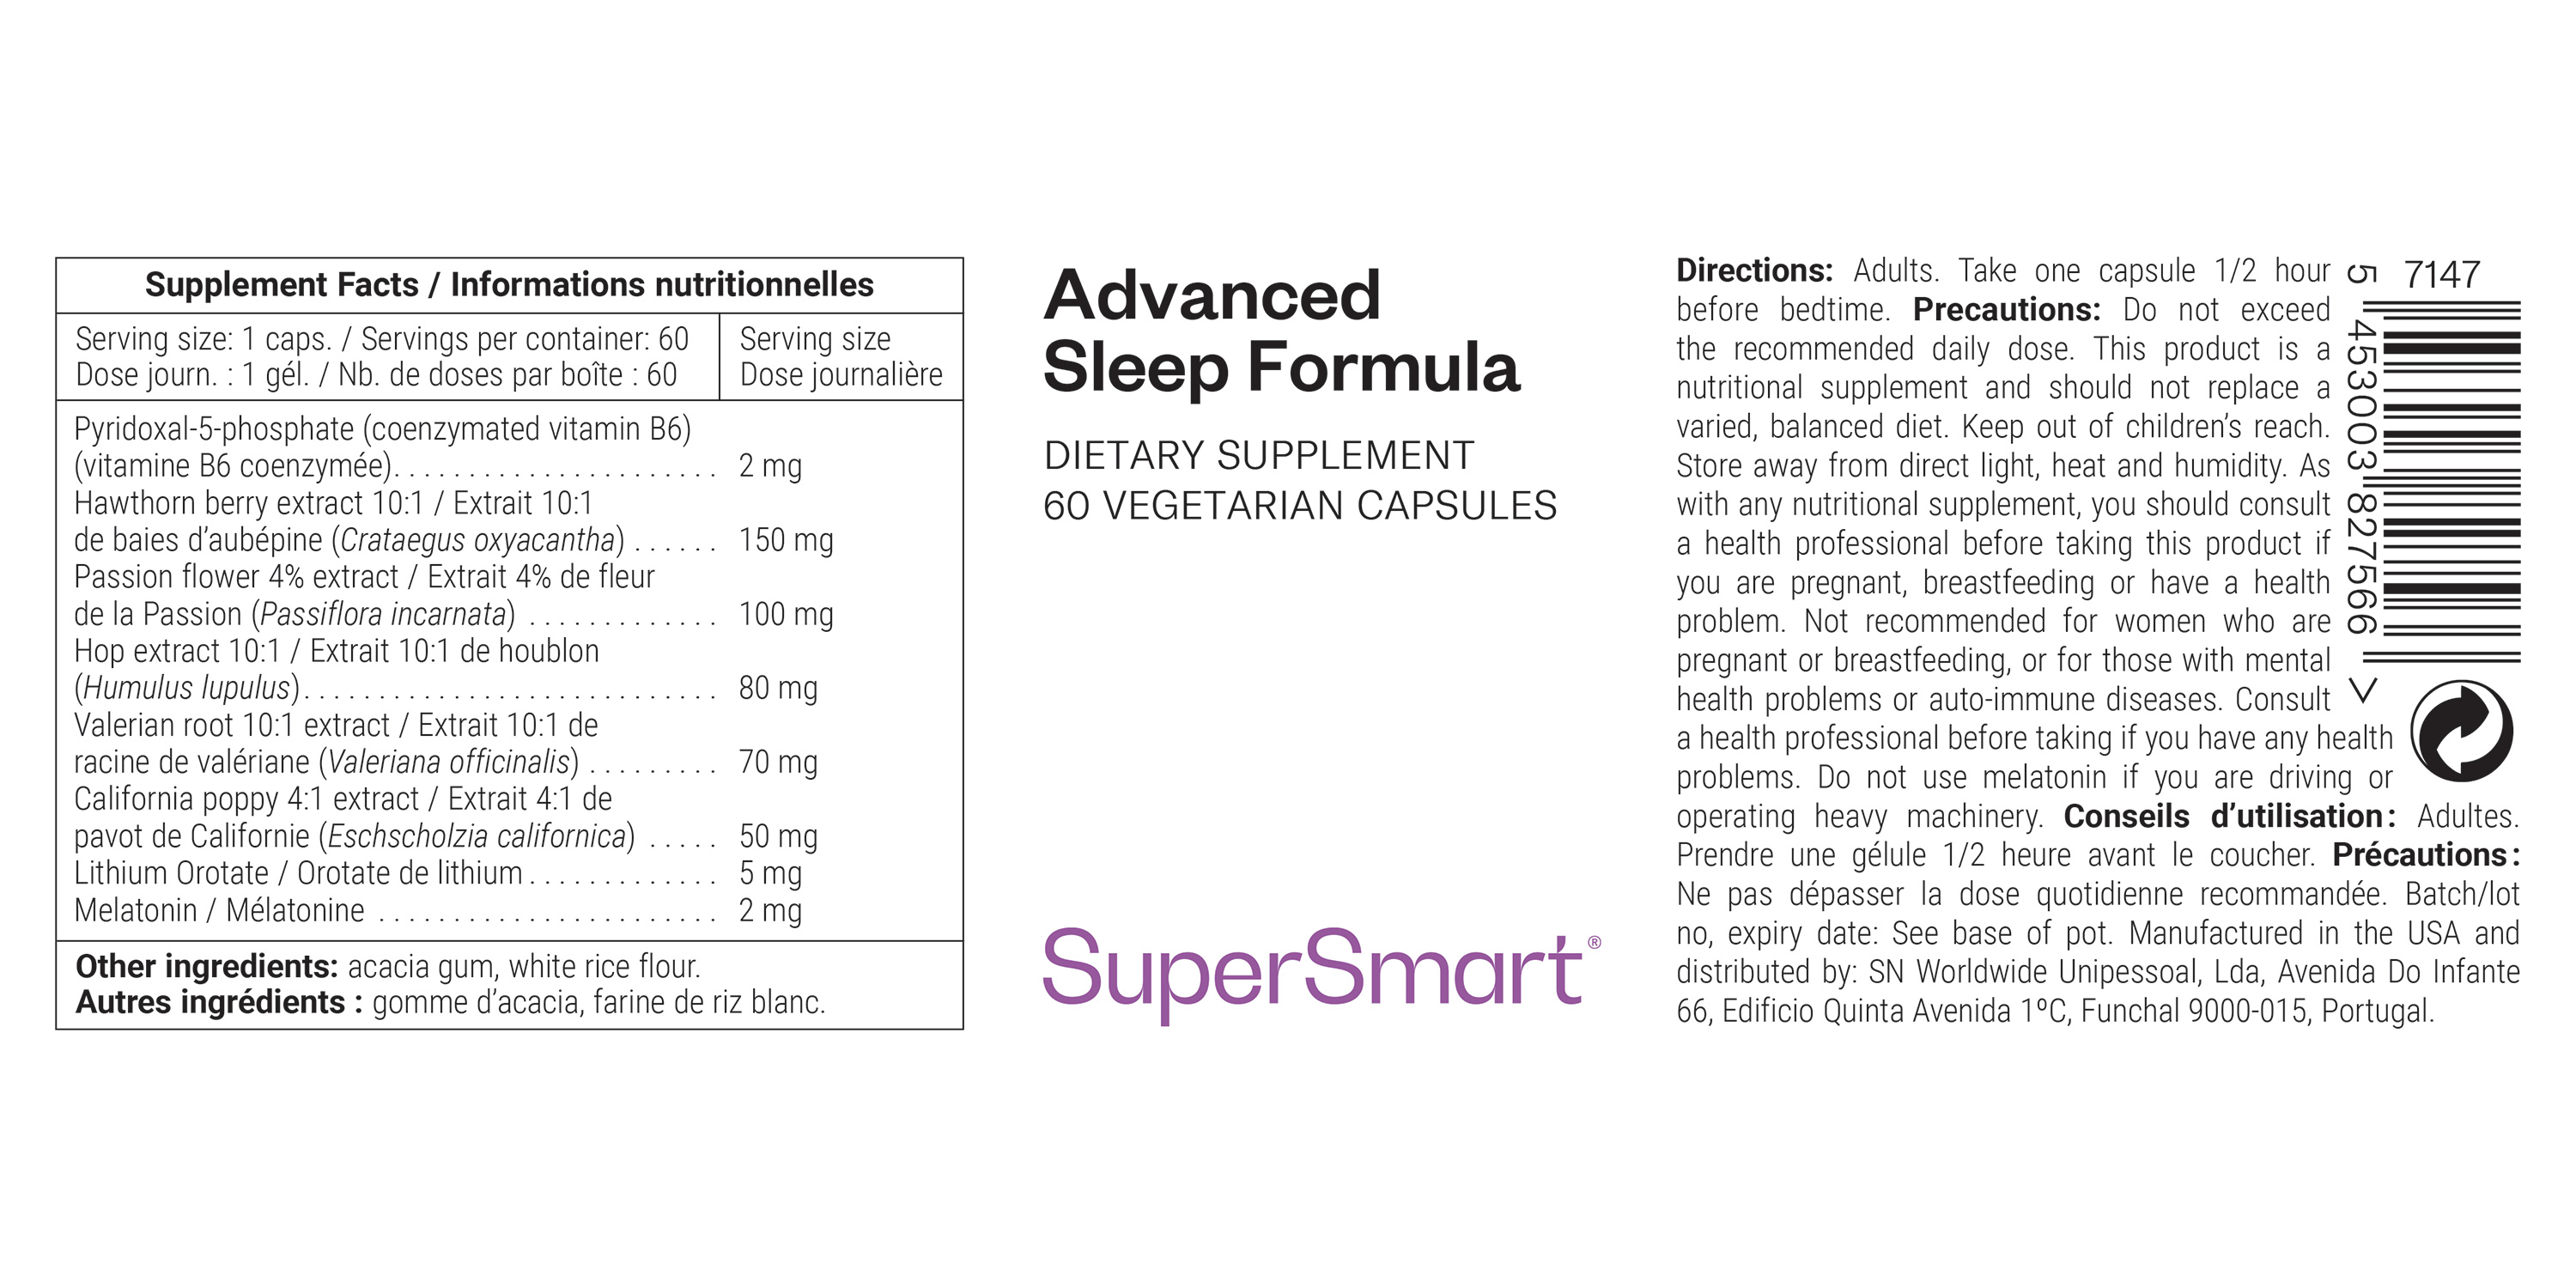 Fórmula relajante para dormir mejor